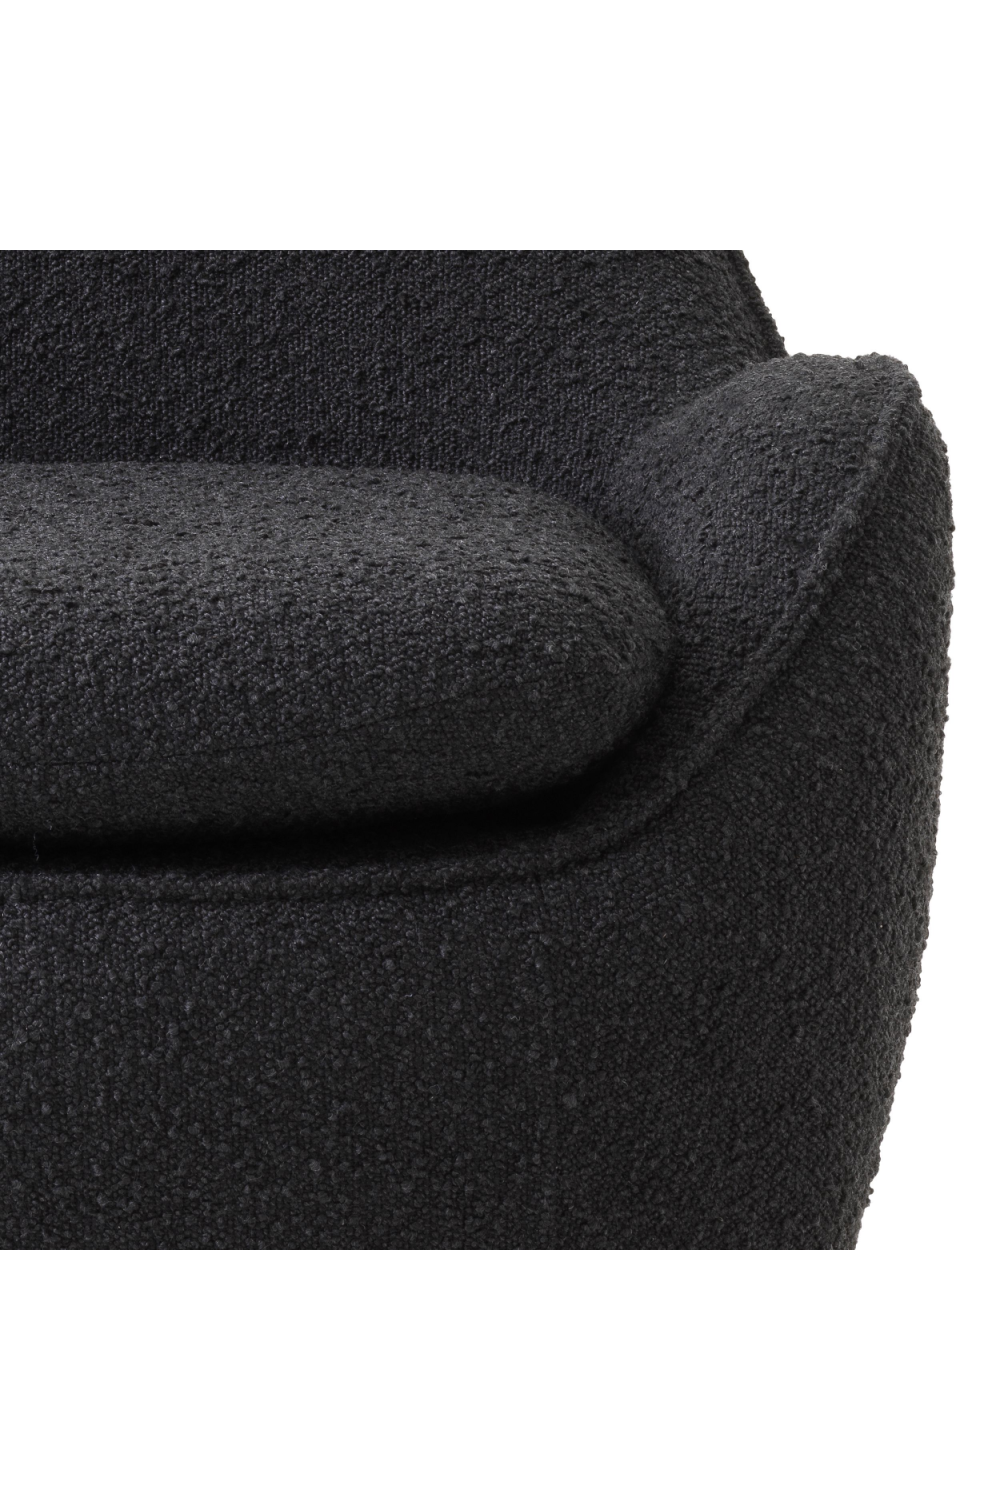 Black Bouclé Swivel Accent Chair | Eichholtz Cupido | Oroa.com